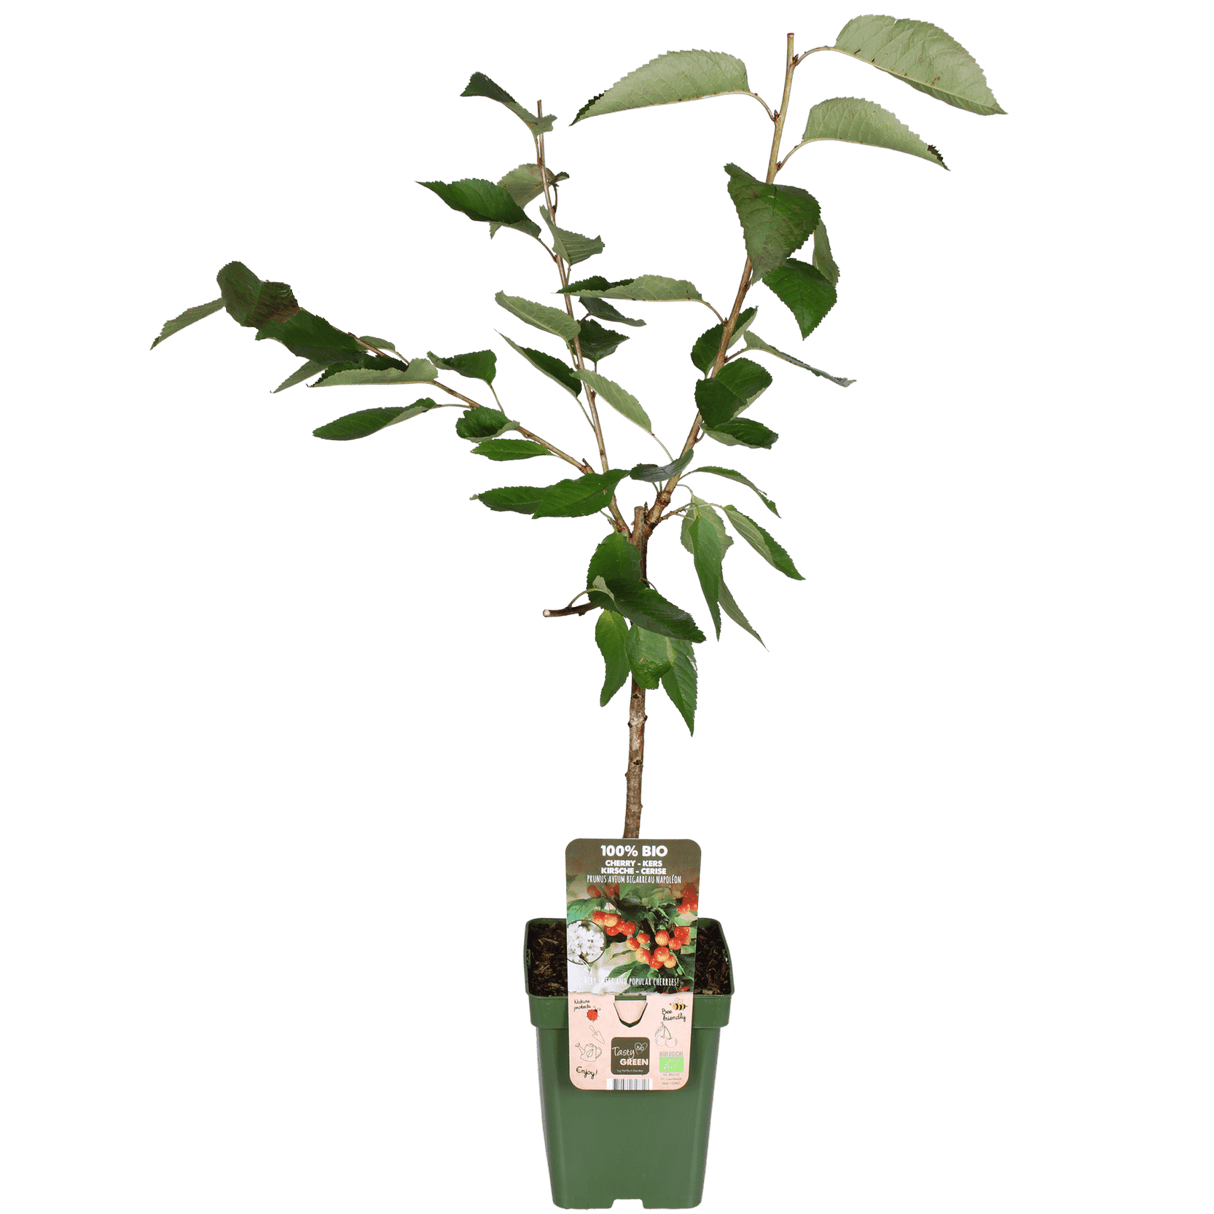 Livraison plante - Prunier 'Bigarreau Napoléon' - h100cm, Ø23cm - grande plante d'extérieur